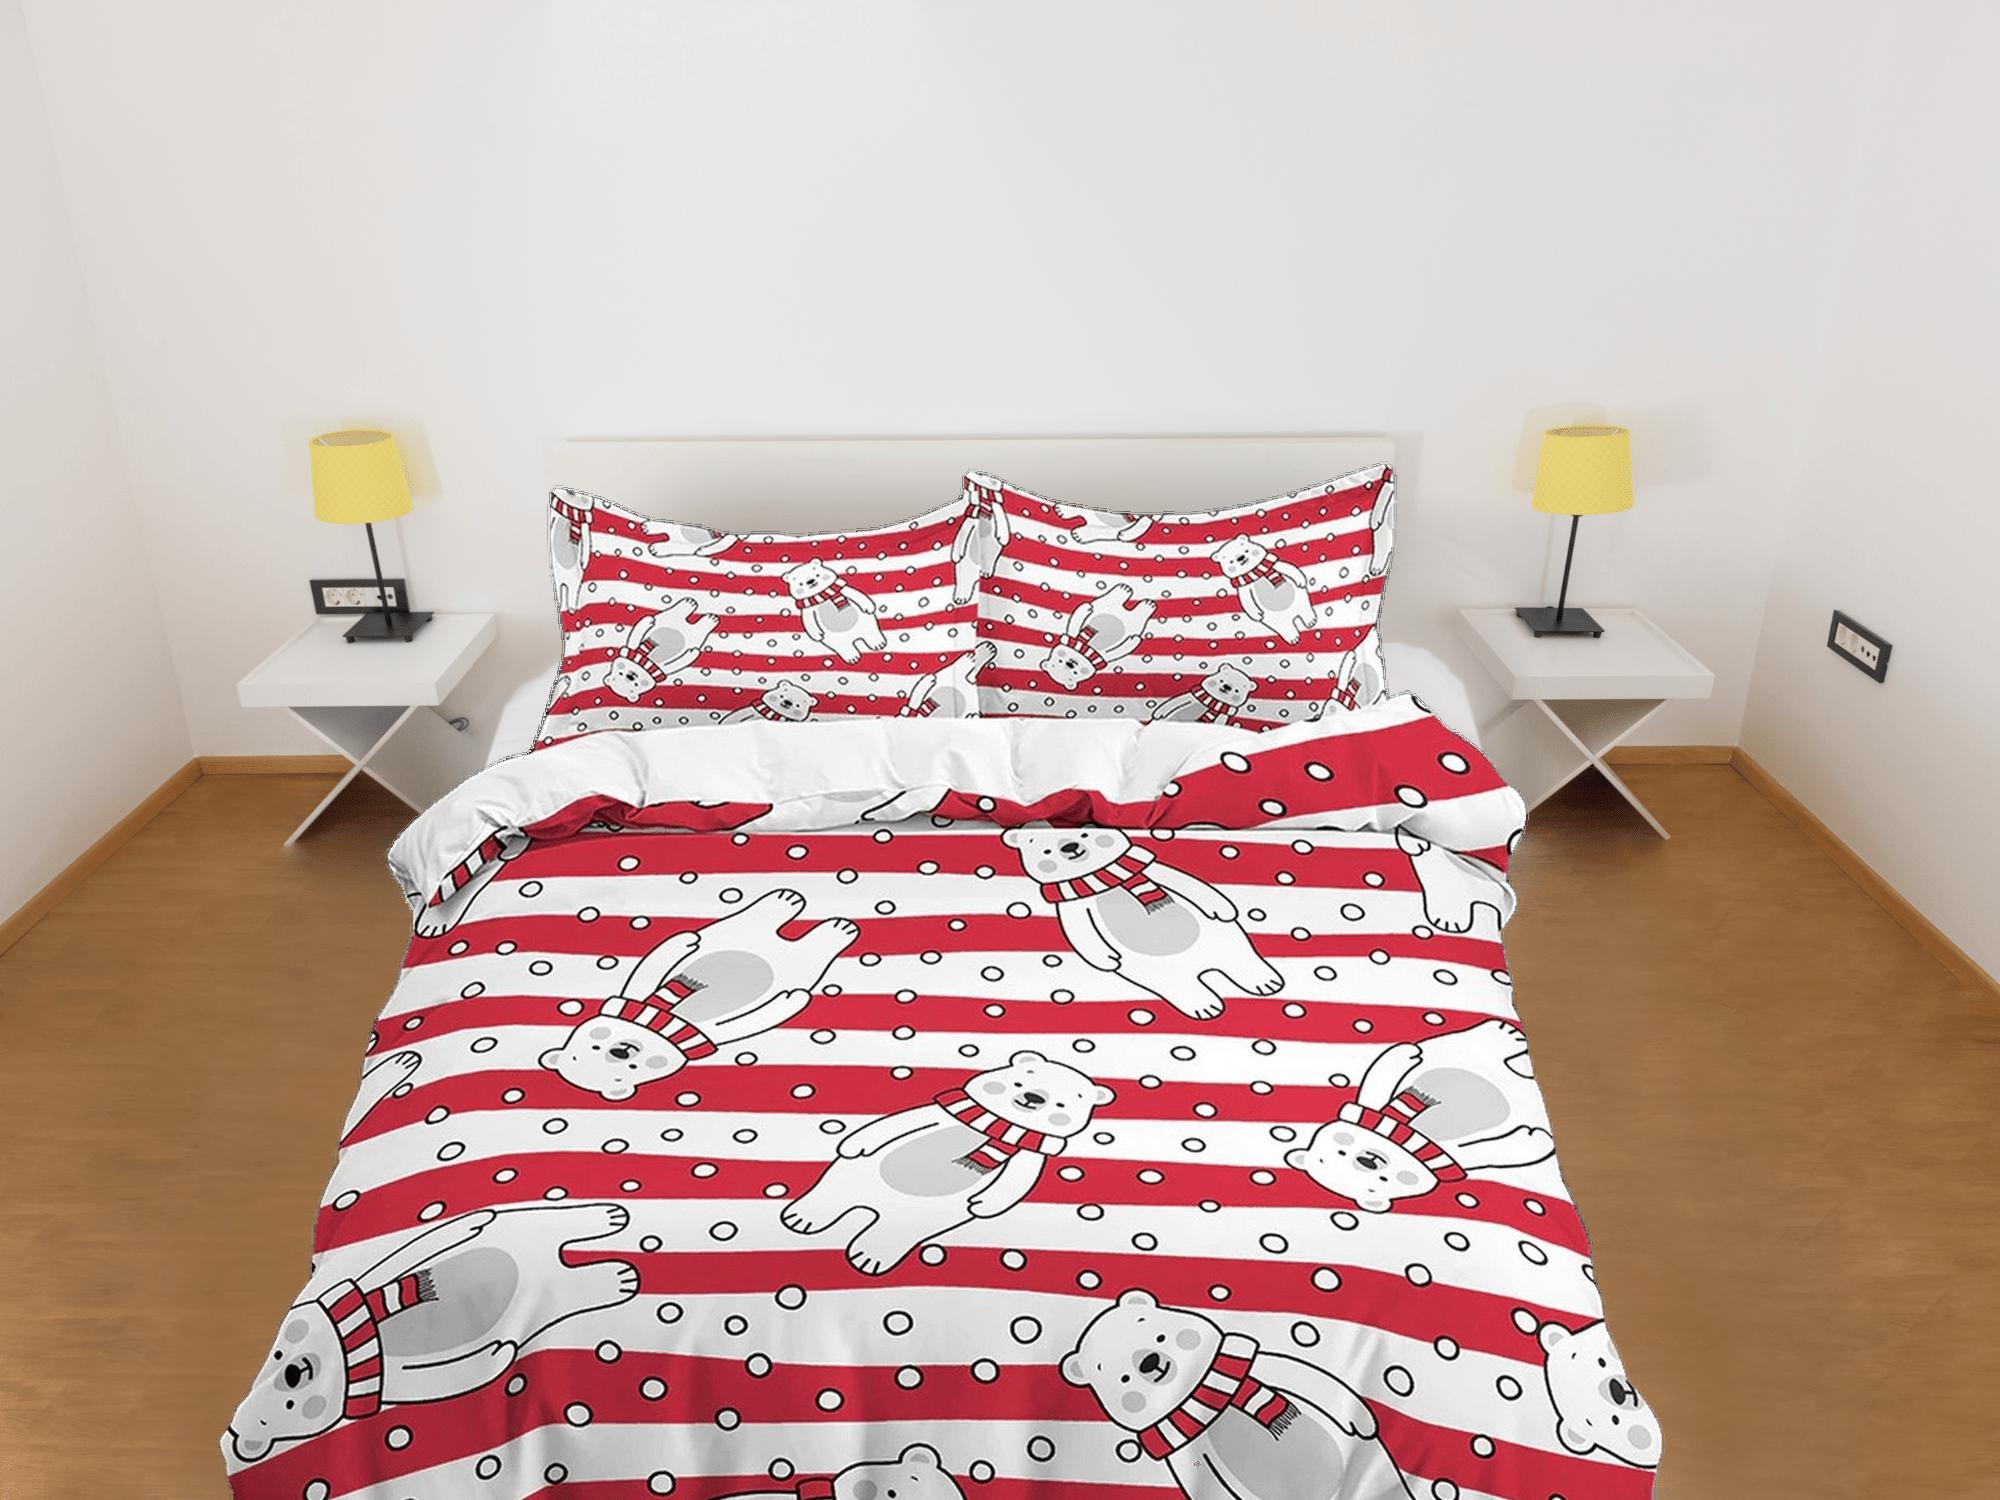 daintyduvet Polar bear in red stripes toddler bedding, duvet cover for nursery kids, crib bedding, baby zipper bedding, king queen full twin